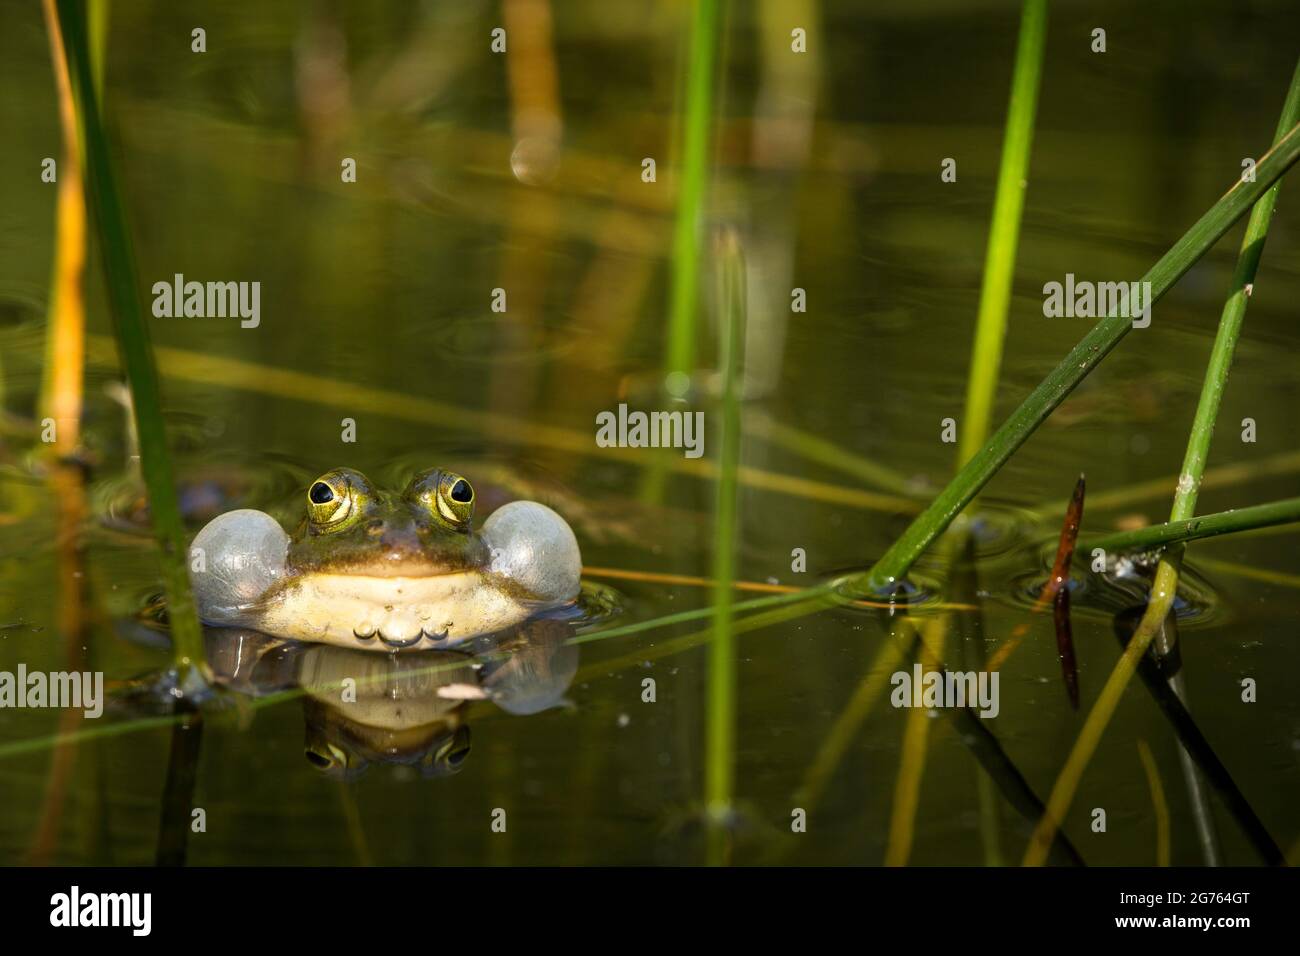 Une grenouille verte avec une bulle sonore gonflée se reflète dans l'eau. Banque D'Images